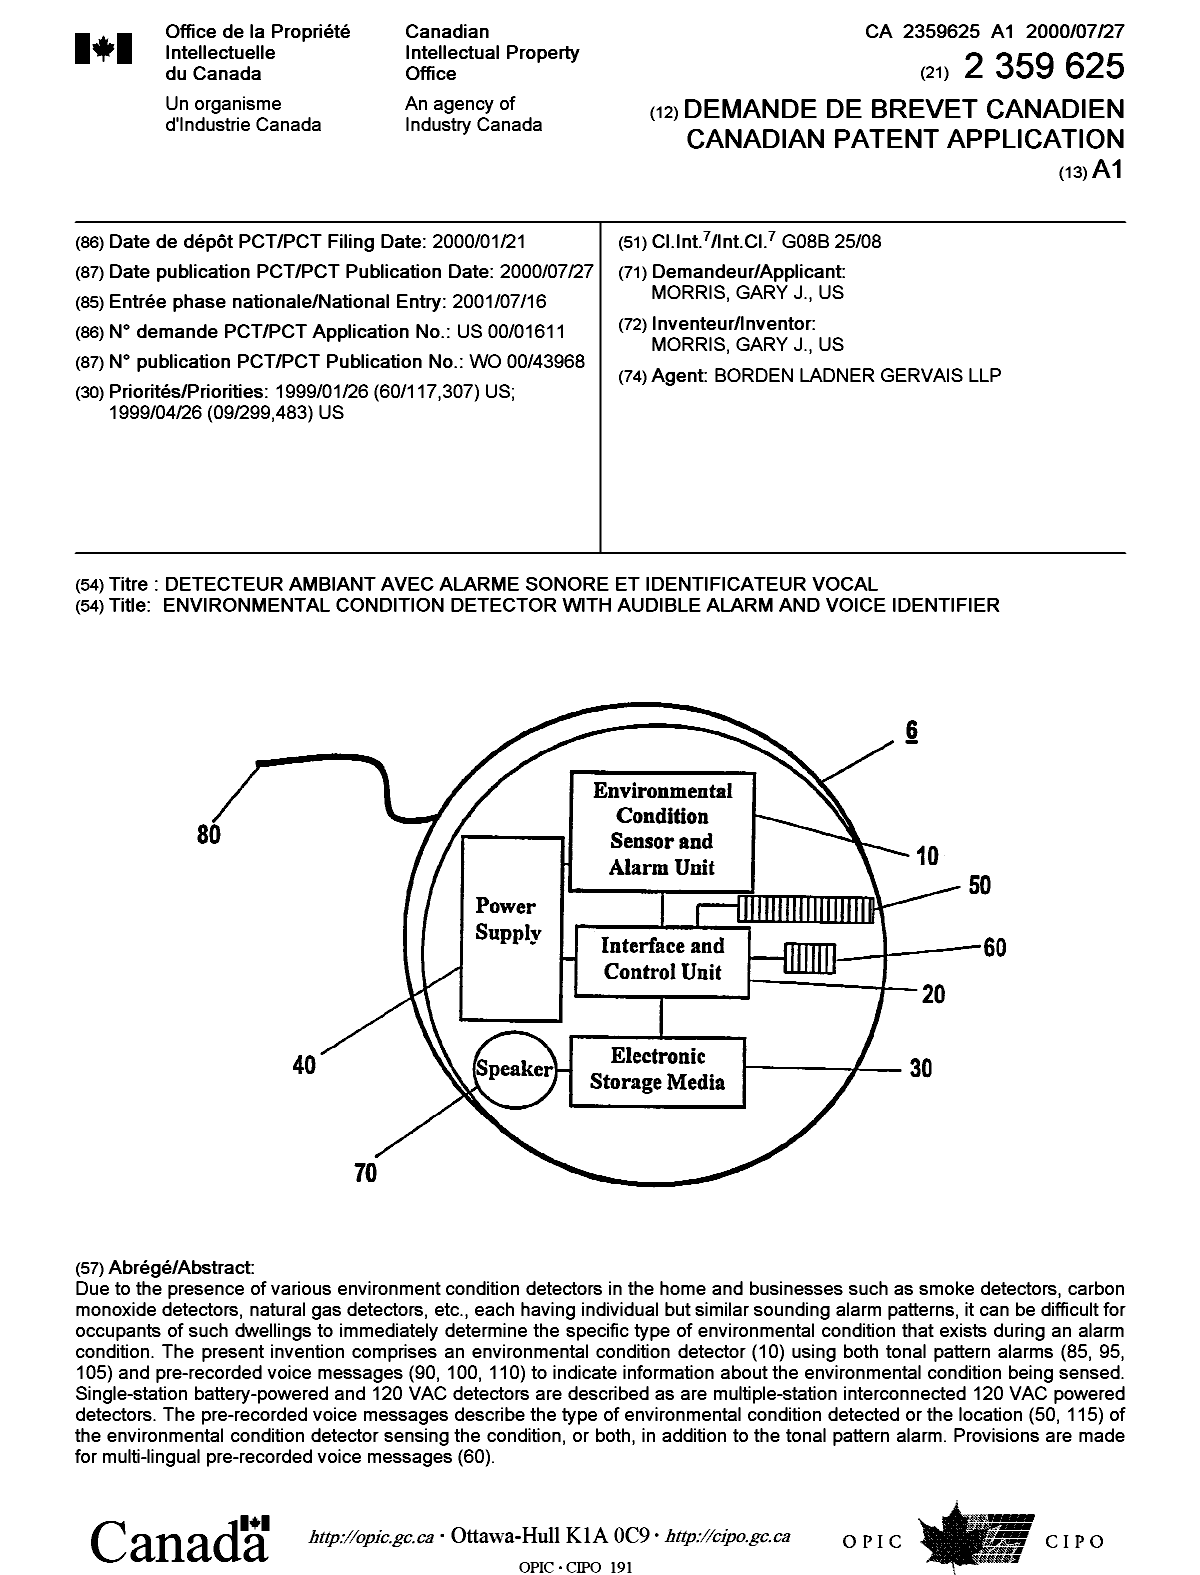 Document de brevet canadien 2359625. Page couverture 20011123. Image 1 de 1